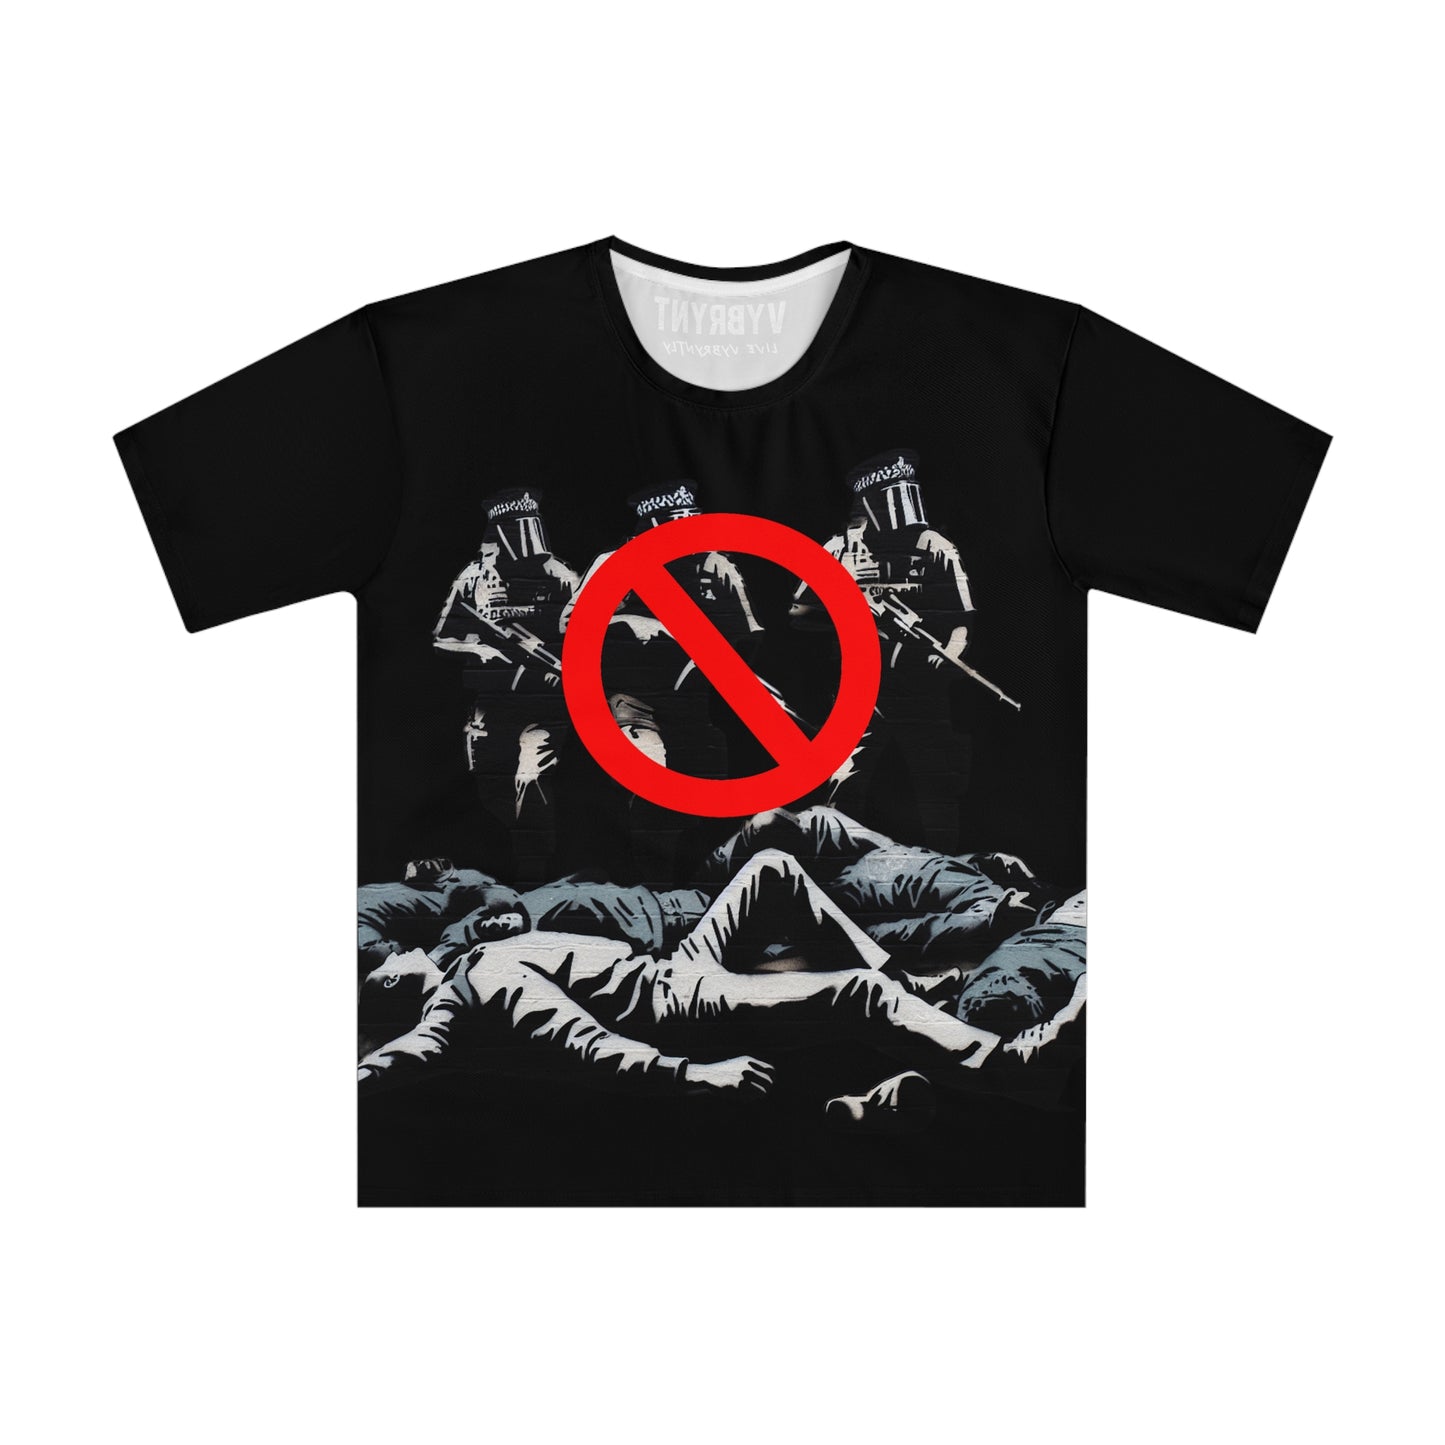 War No More Men's Black T-shirt